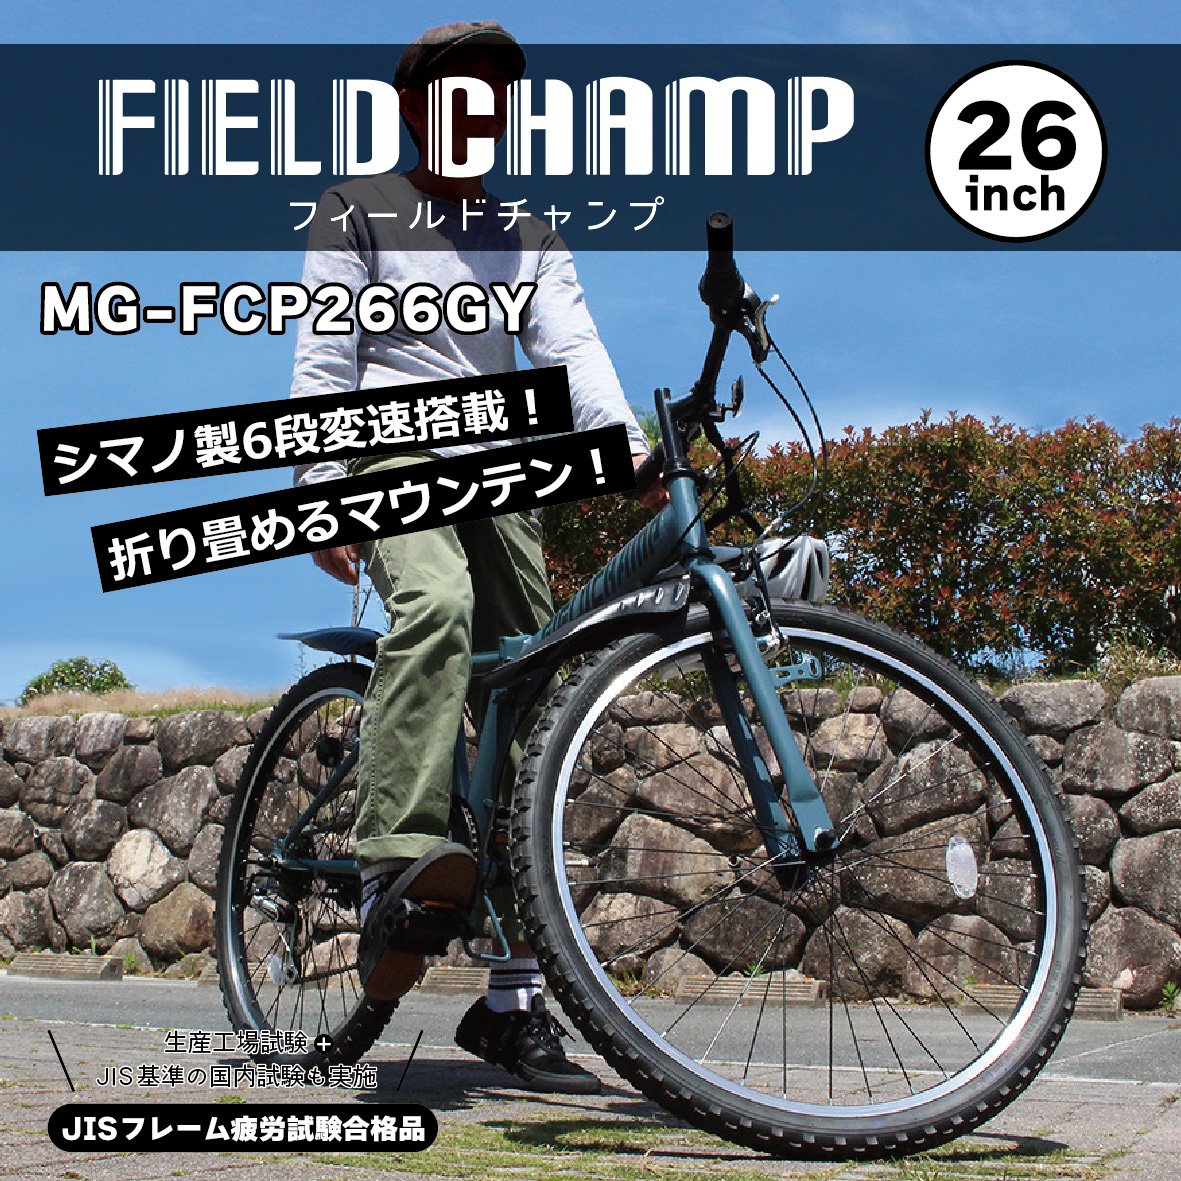 マウンテンバイク 折りたたみ 自転車 ミムゴ FIELD CHAMP フィールドチャンプ 26インチ 6段変速 折畳み マウンテンバイク GY